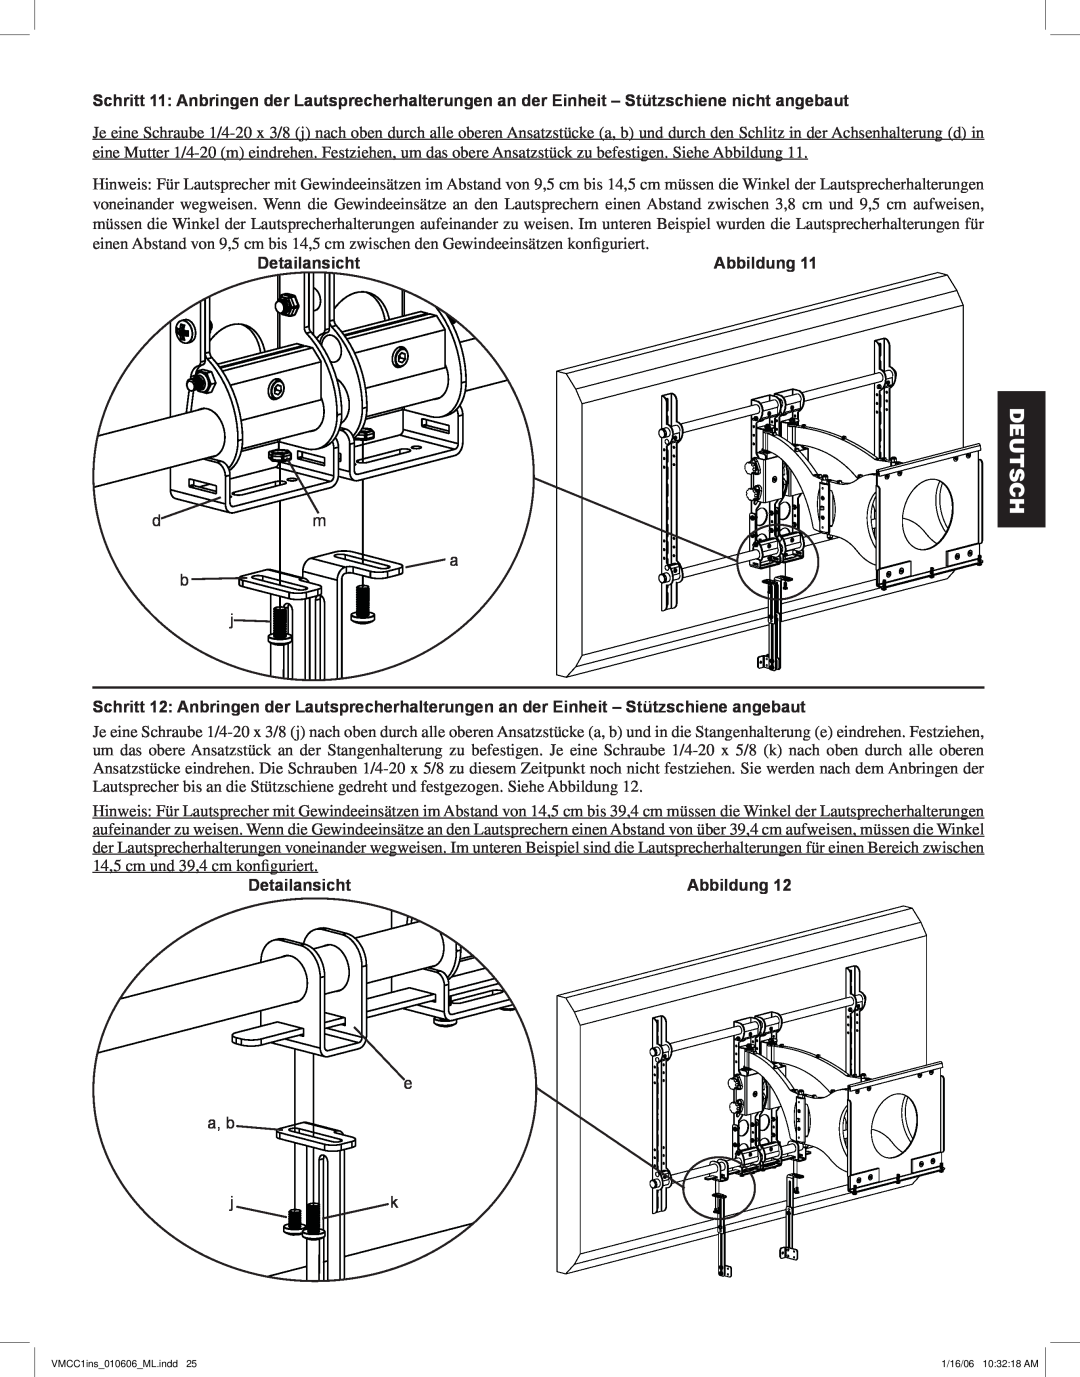 Sanus Systems VMCC1 manual Deutsch, Detailansicht, Abbildung 